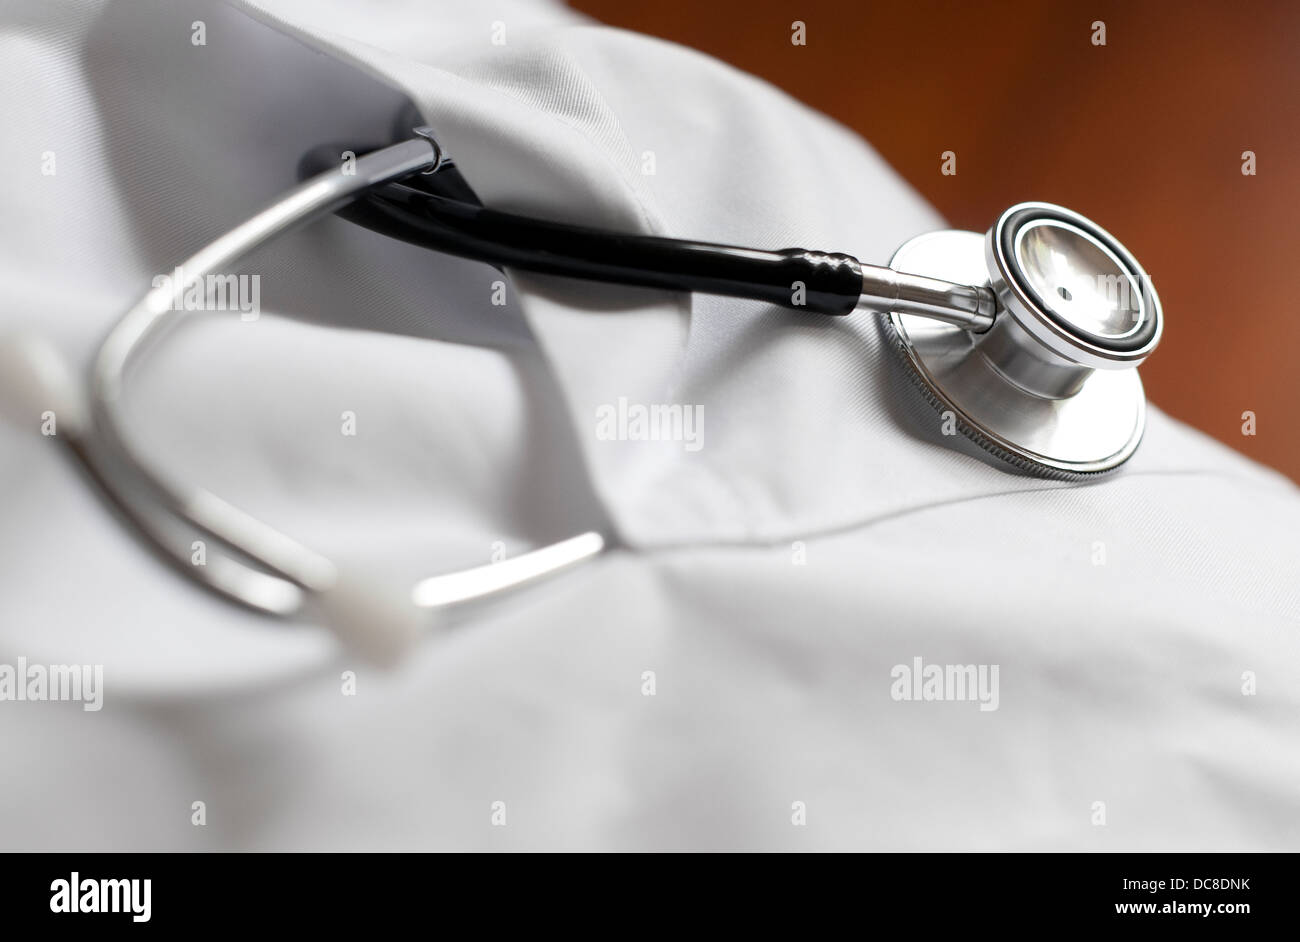 Estetoscopio del médico en el bolsillo de su chaqueta blanca Foto de stock